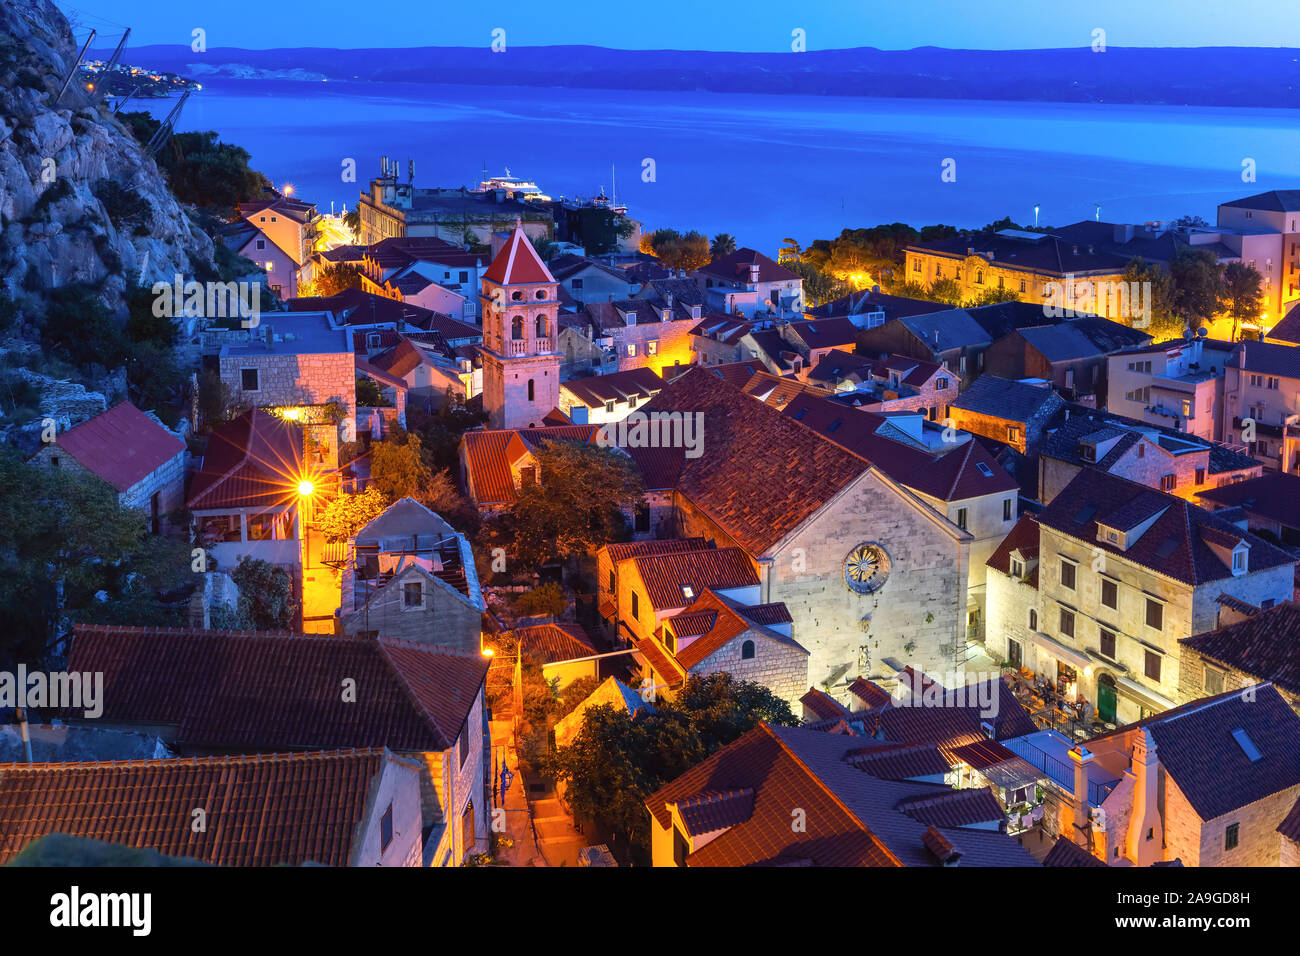 Les toits rouges de la vieille ville et l'église de St nuit Michaelat, omis, destination touristique populaire en Croatie Banque D'Images